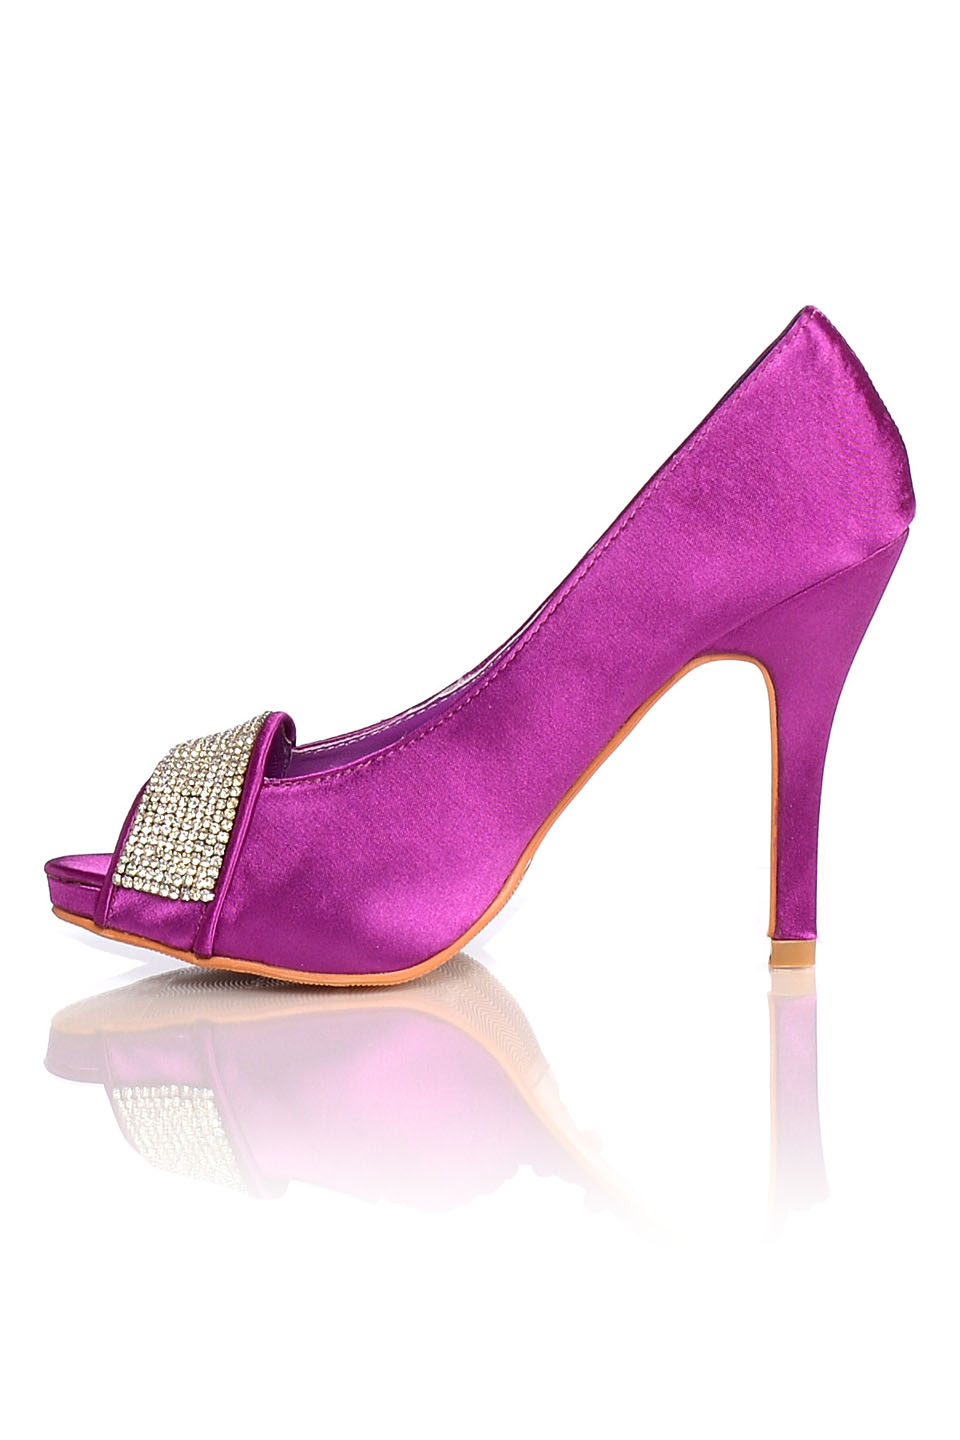 Satin Evening Shoes - Pumps Purple